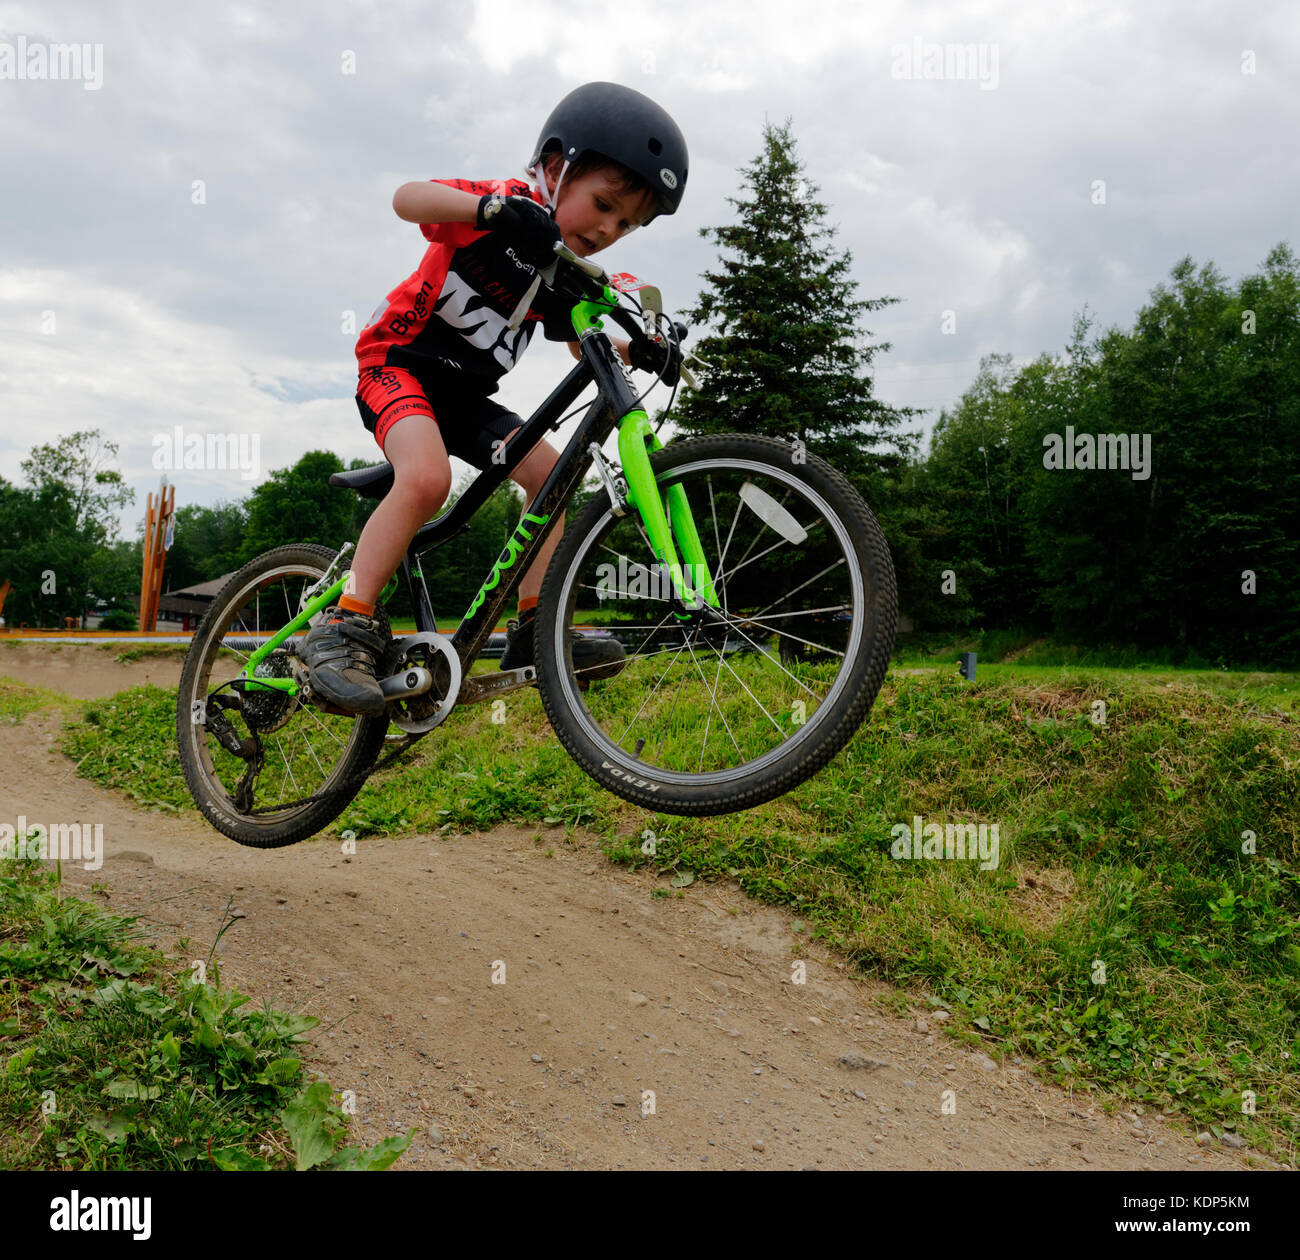 Un jeune garçon (5 ans) qui saute dans un vélo de montagne Banque D'Images